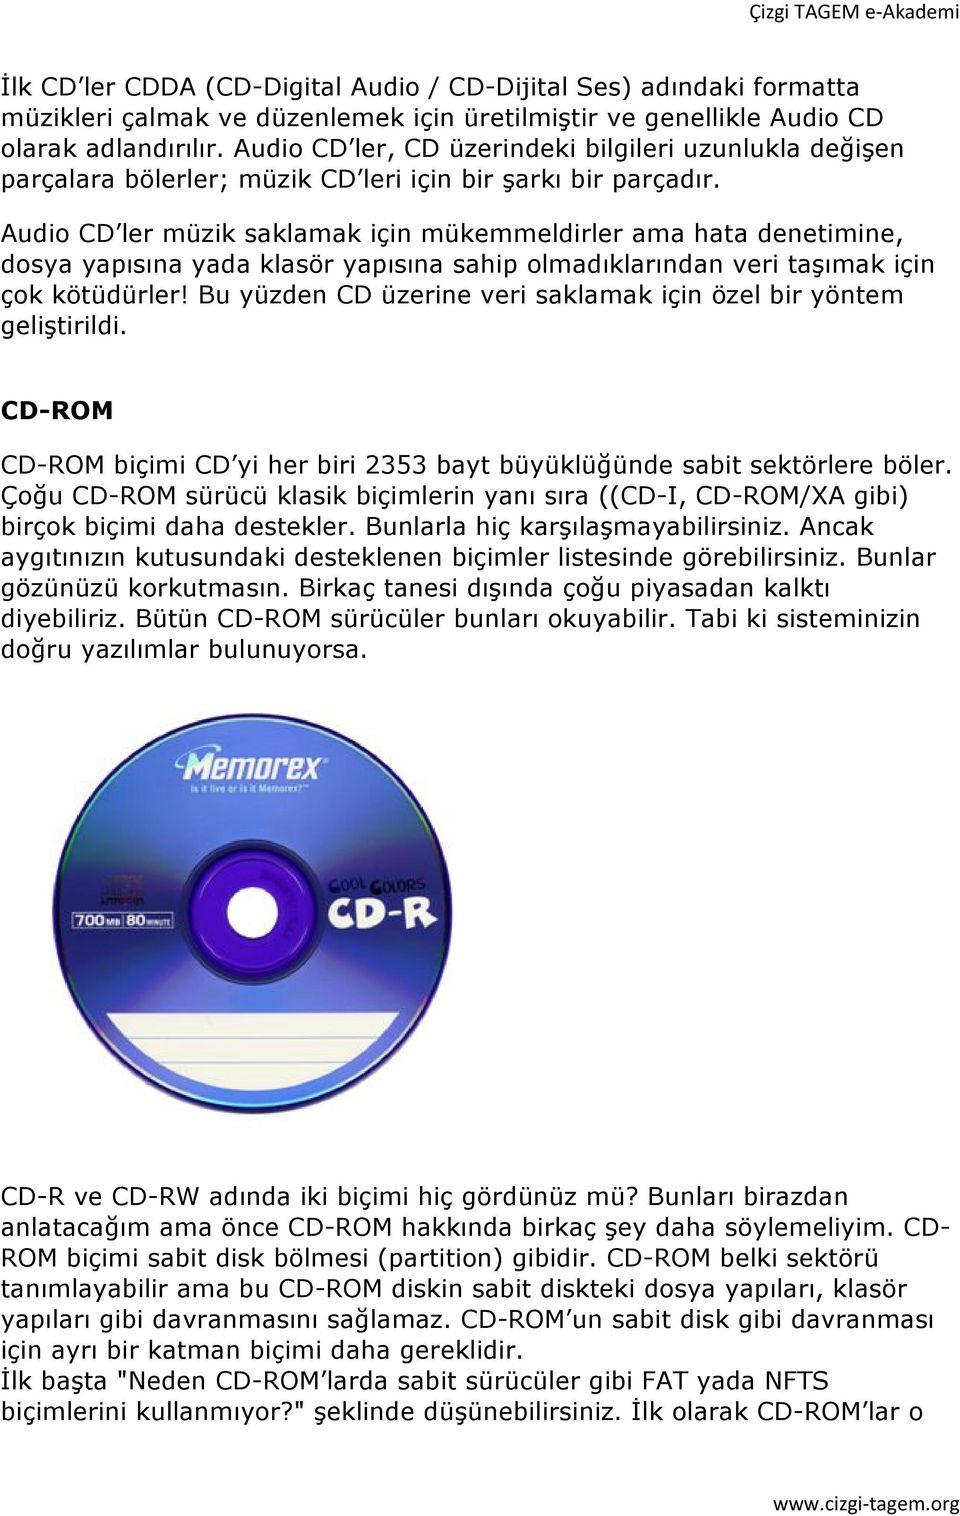 Audio CD ler müzik saklamak için mükemmeldirler ama hata denetimine, dosya yapısına yada klasör yapısına sahip olmadıklarından veri taşımak için çok kötüdürler!